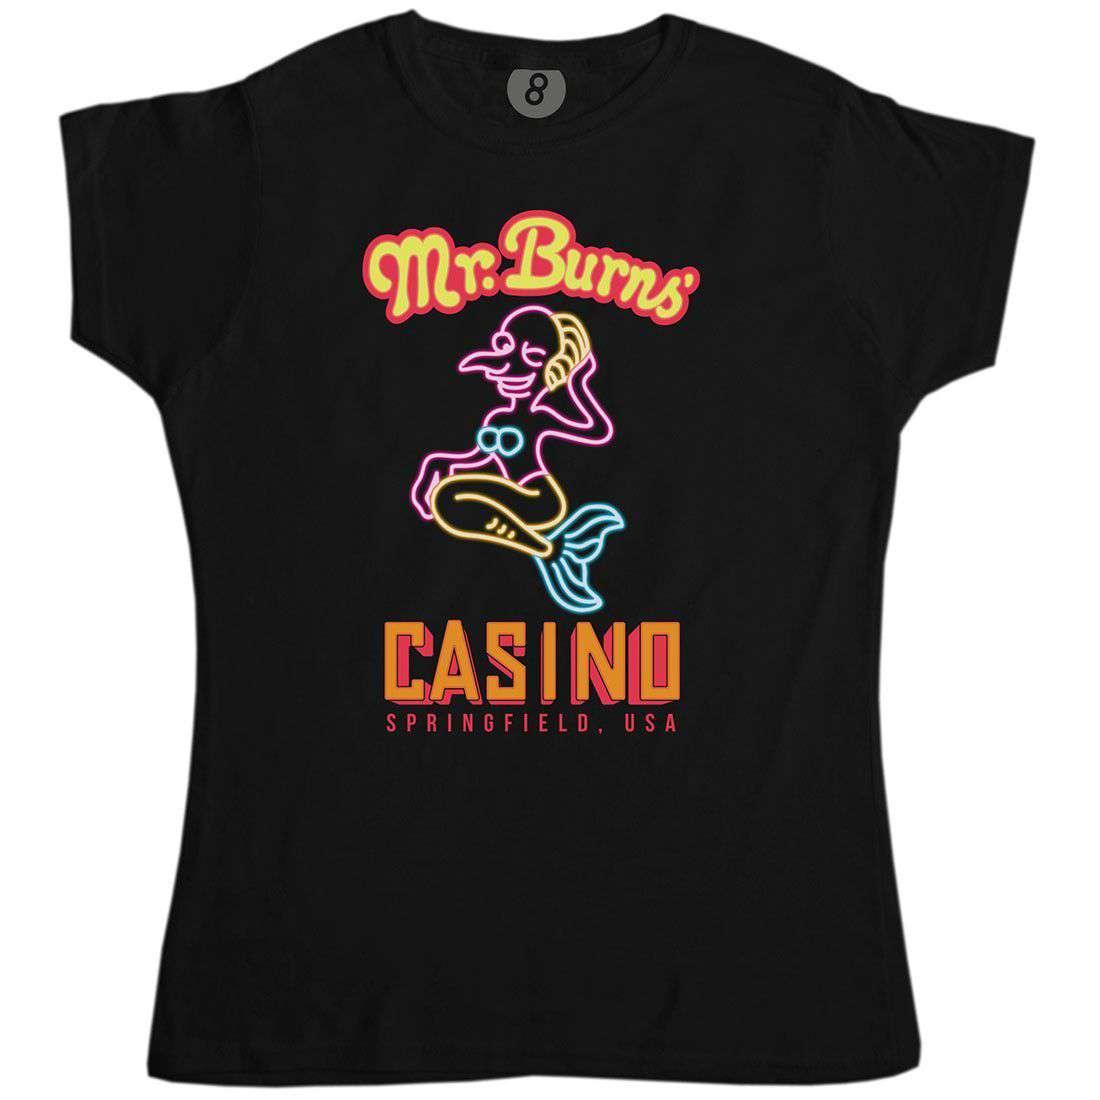 Mr Burns Casino Womens T-Shirt 8Ball